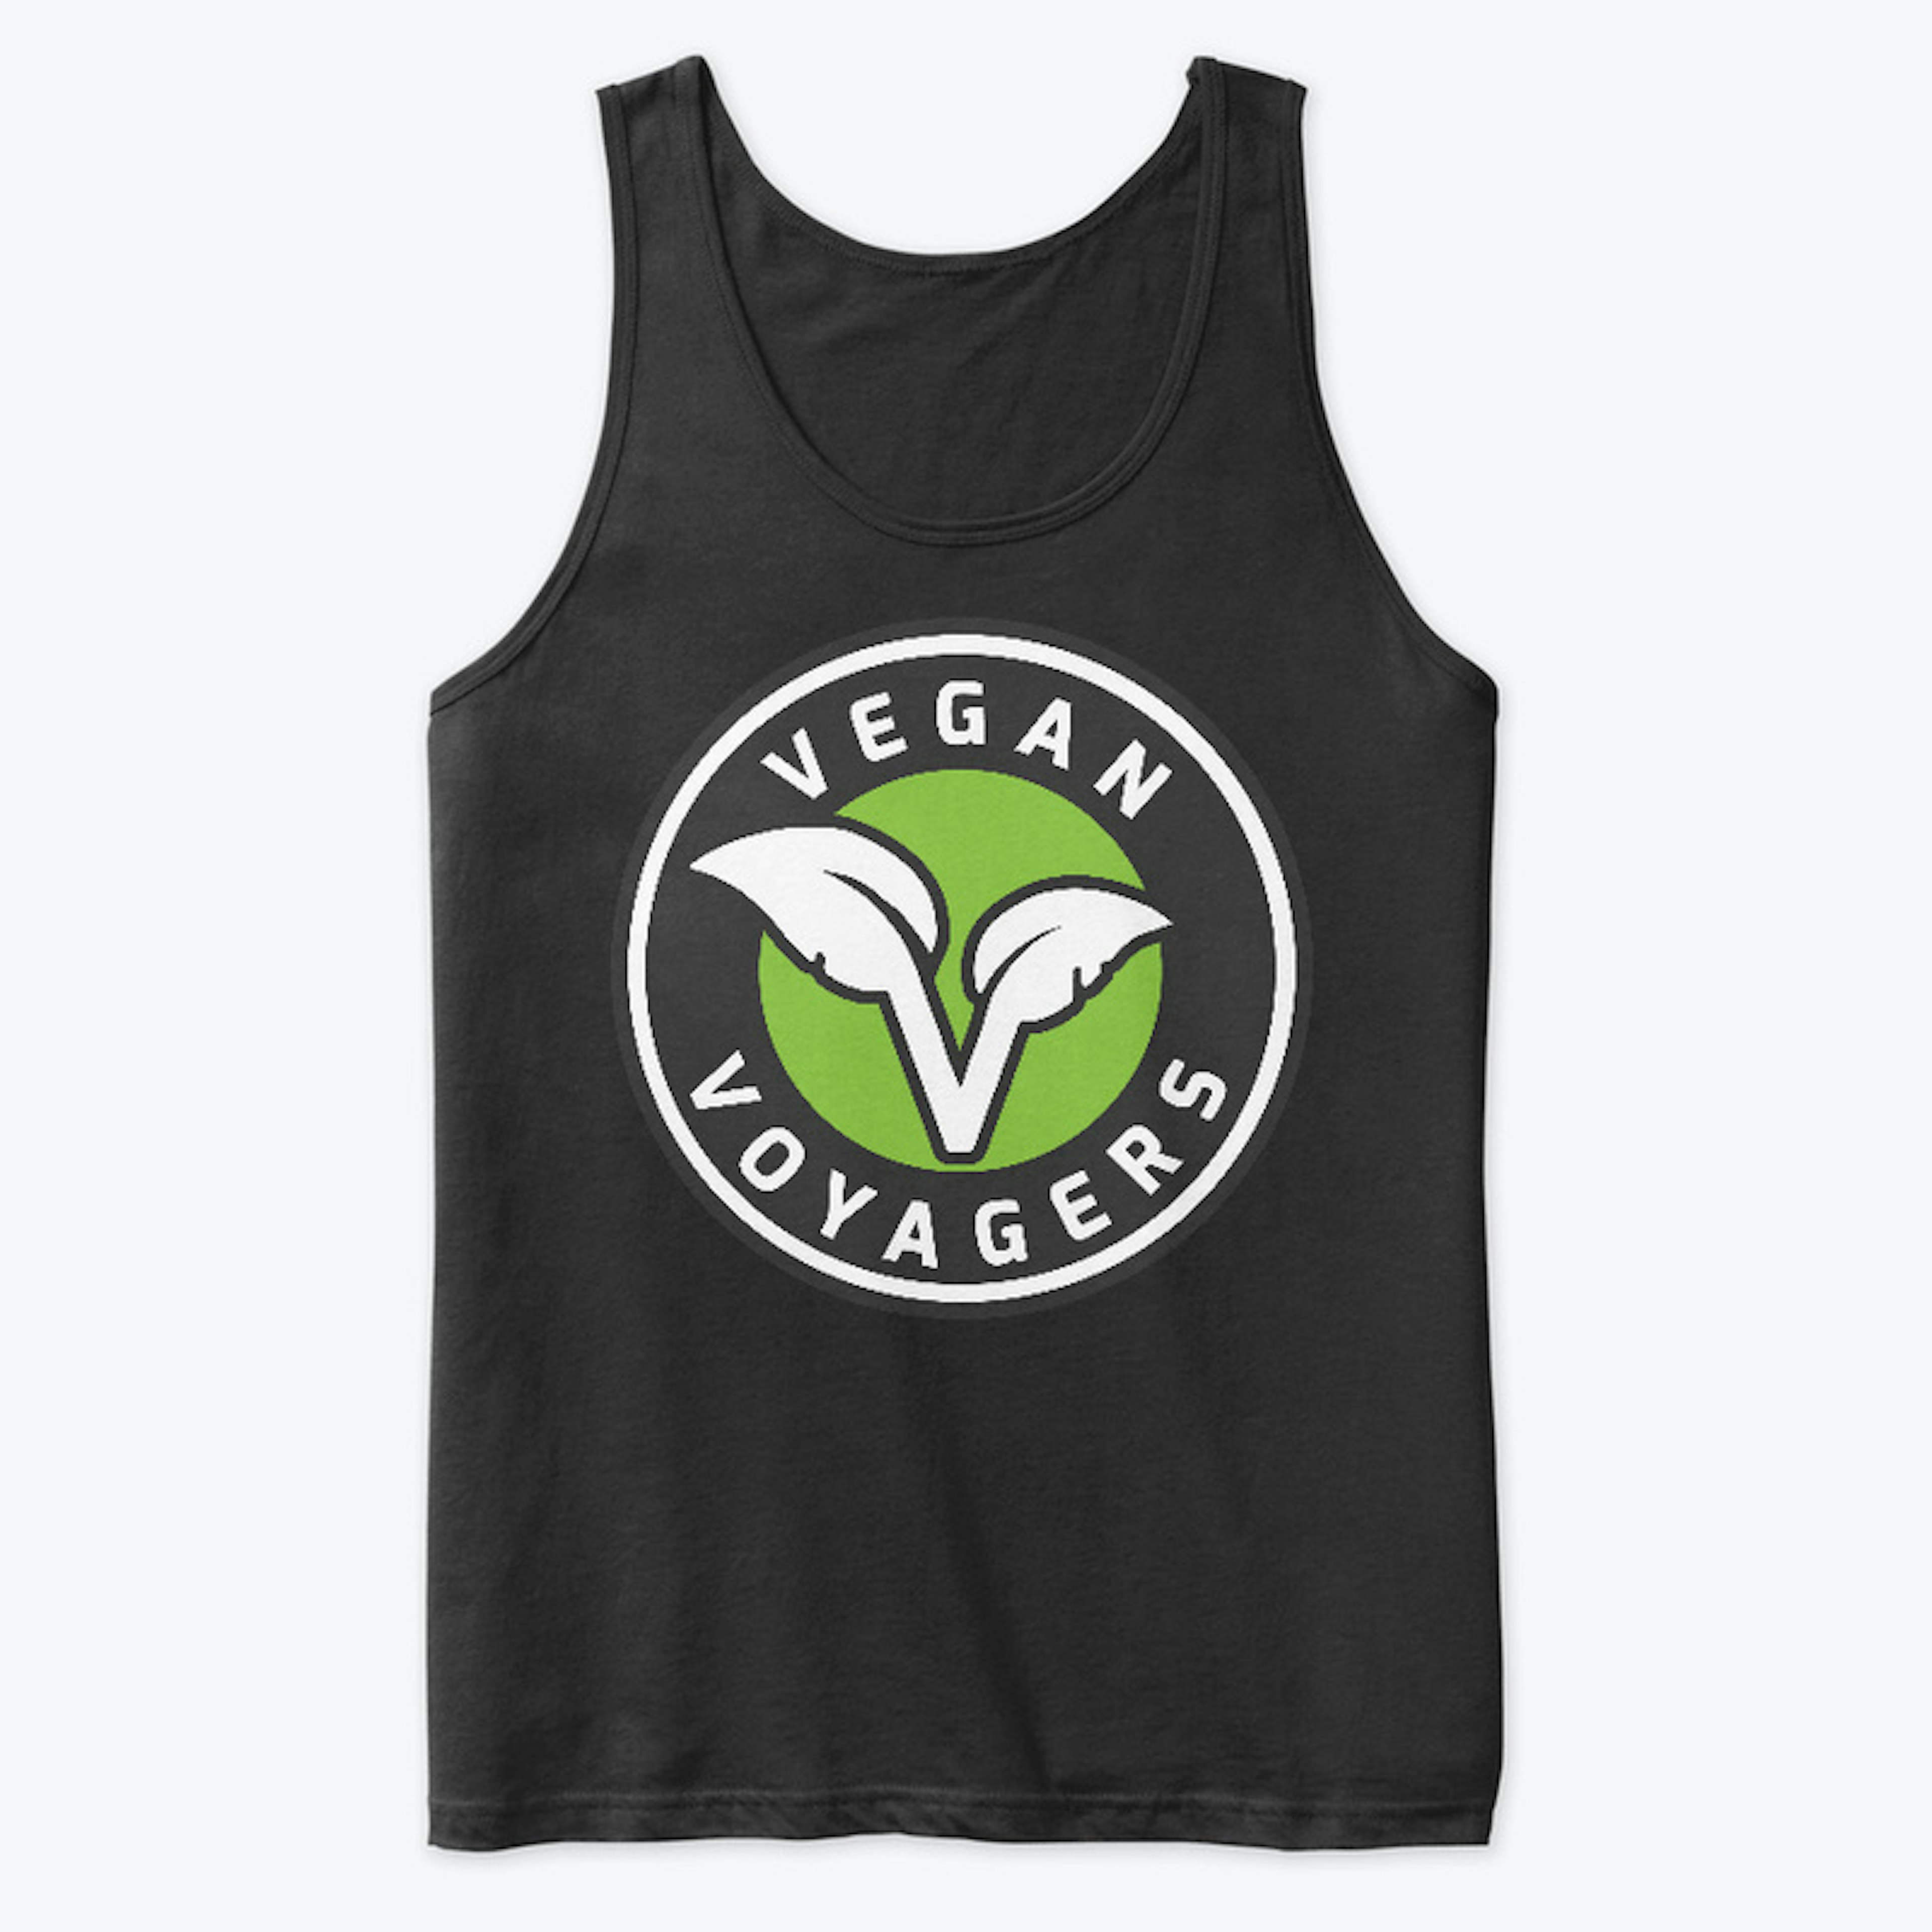 Vegan Voyagers Large Logo Tank Top